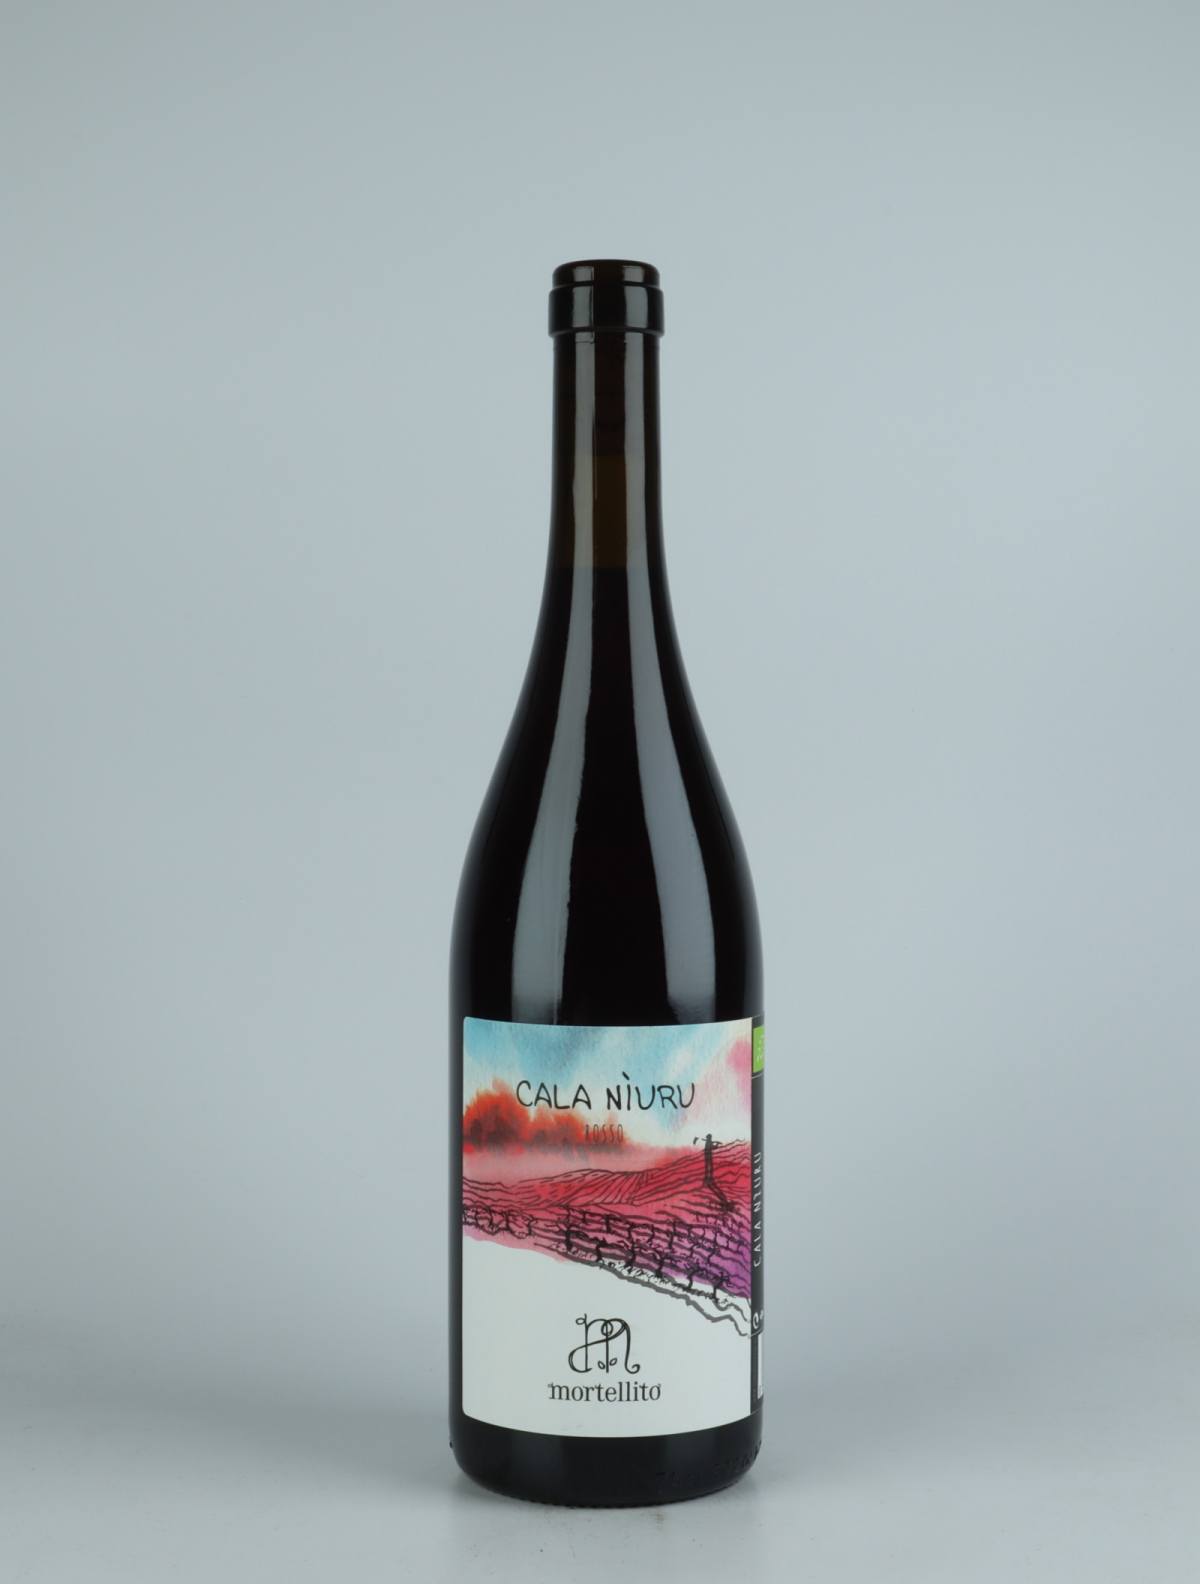 A bottle 2021 Cala Niuru - Rosso Red wine from Il Mortellito, Sicily in Italy